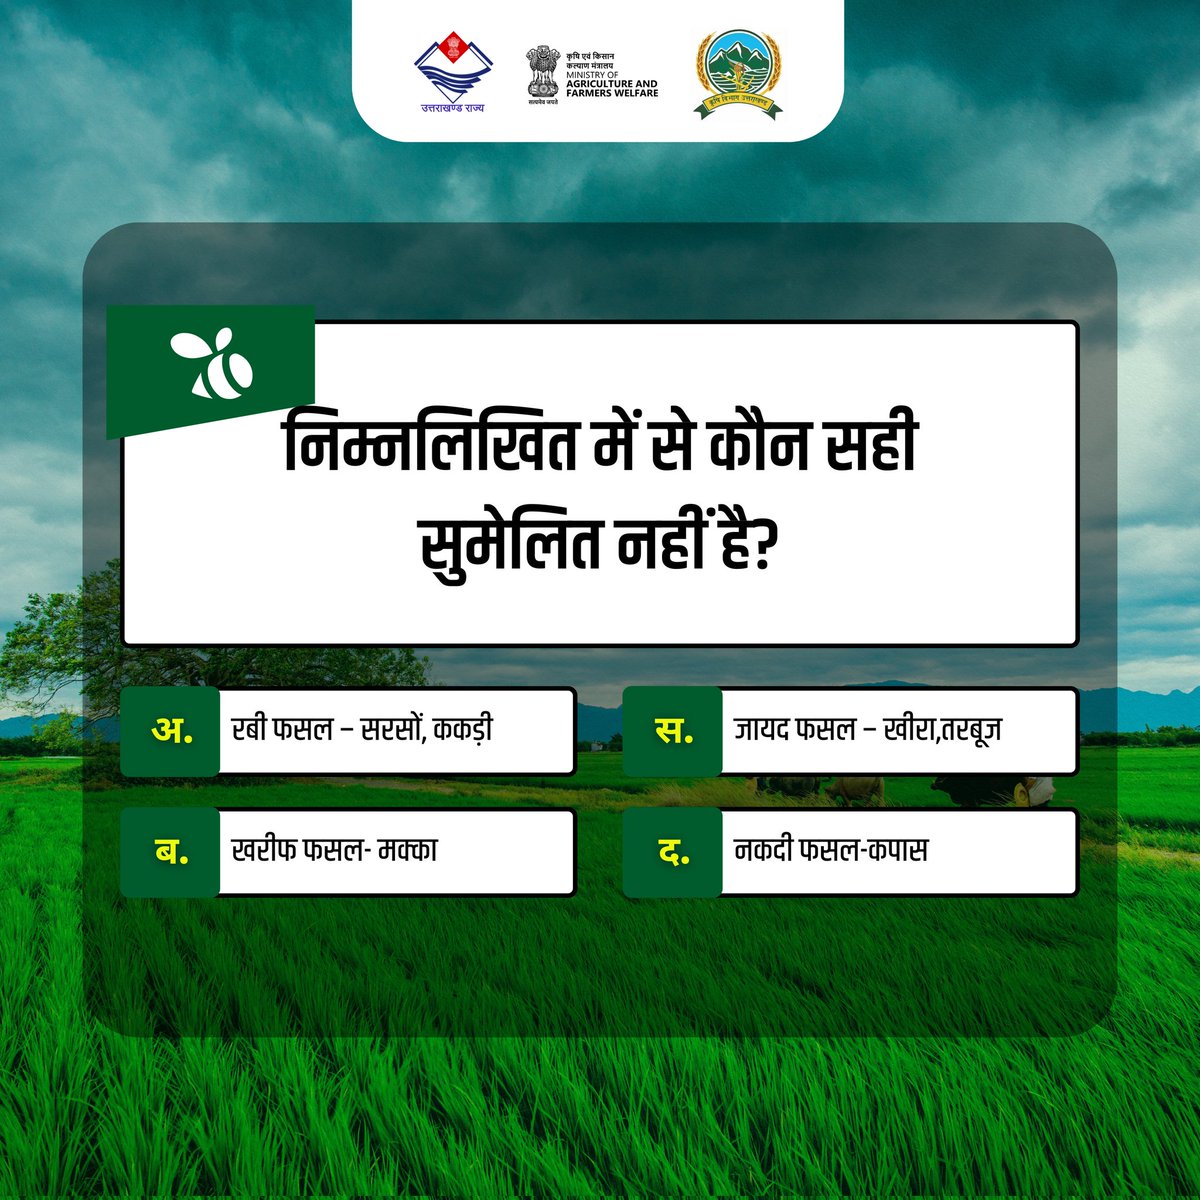 कृषि क्विज में हिस्सा लें और अपने ज्ञान का परीक्षण करें!

कृपया कमेंट में अपना उत्तर हमें साझा करें। 
. 
#AgricultureQuiz #Quiz #KnowledgeTest #Quiztime #QuestionoftheDay  #UKAgriculture #FarmersofIndia #Uttarakhand #UttarakhandLatest #UttarakhandFarmers #MinistryofAgriculture